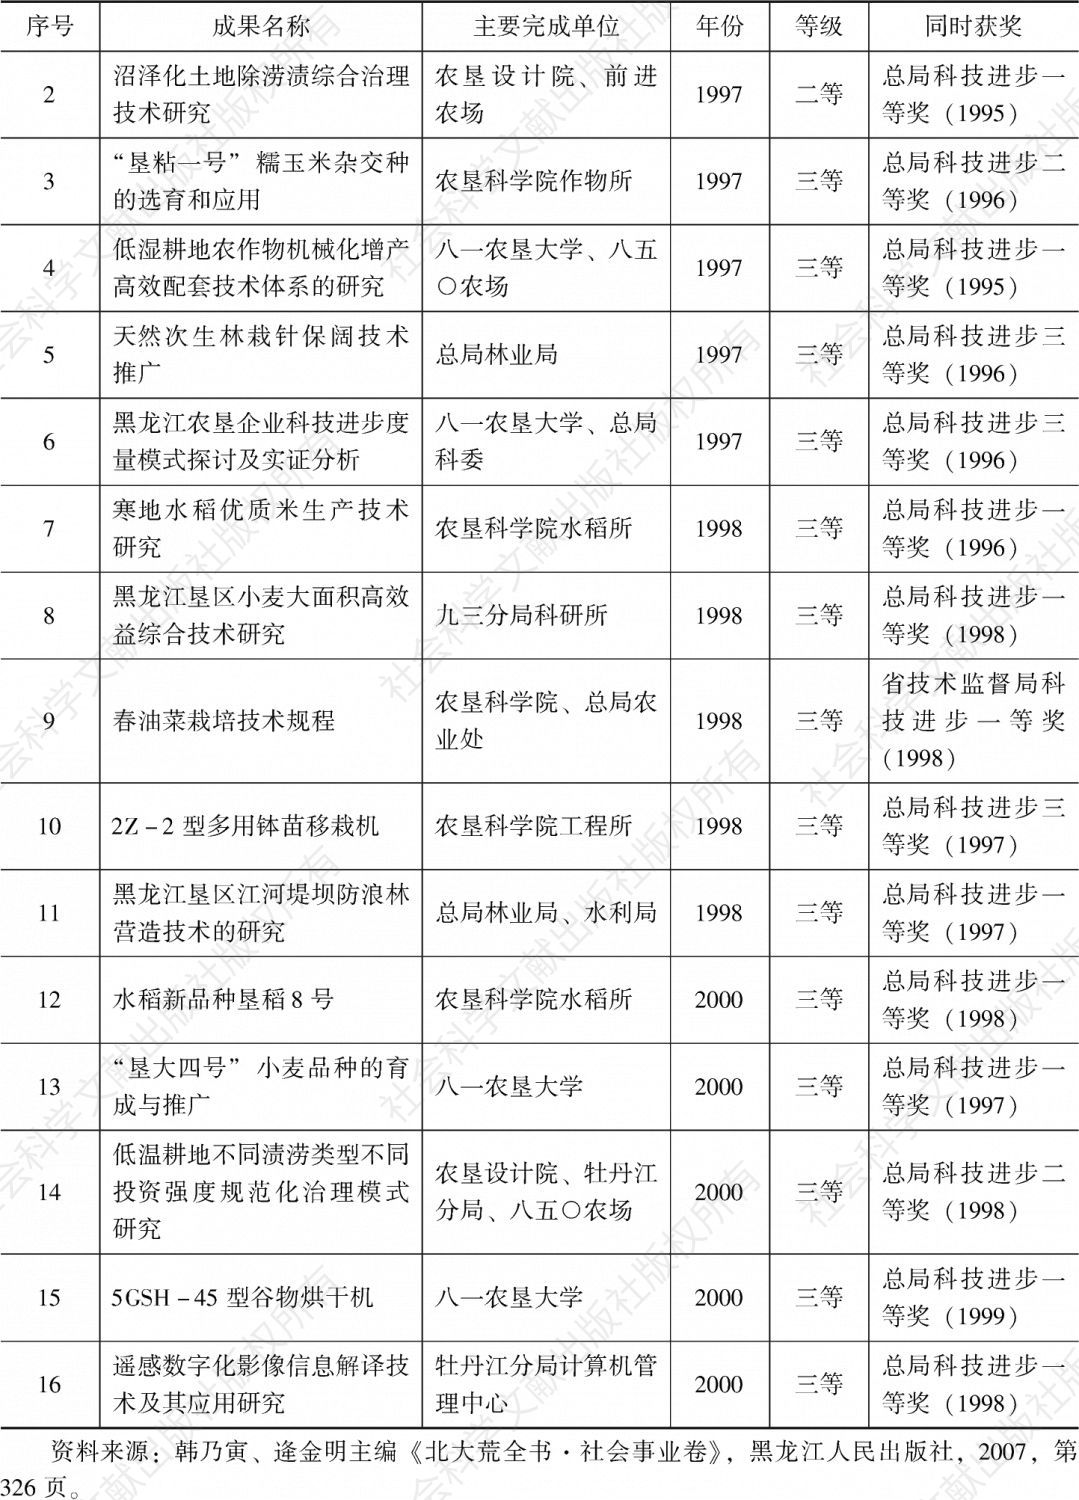 表9-5 黑龙江垦区获黑龙江省科技进步三等奖以上奖项情况-续表